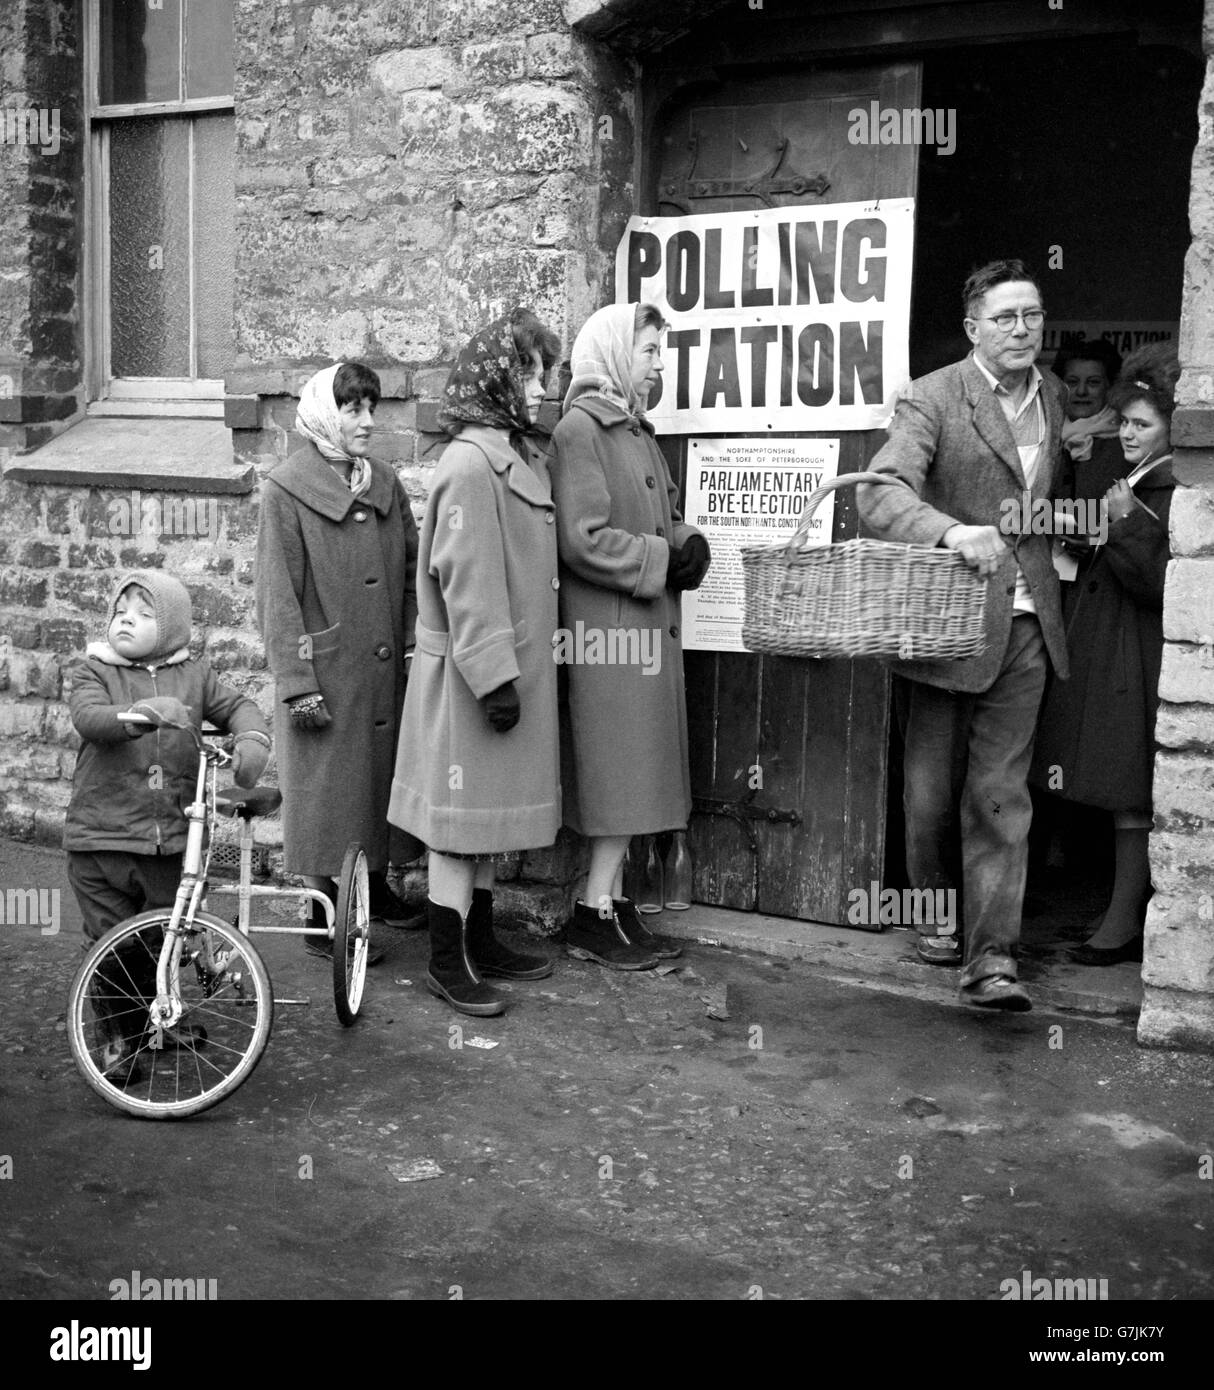 Ein Bäcker mit einem Korb am Arm verlässt ein Wahllokal in Towcester, nachdem er in der Nachwahl in South Northamptonshire gewählt hat. Frauen in Kopftüchern stehen vor der Tür, während ein kleines Kind und zukünftiger Wähler sein Dreirad anhält und zuschaut. Stockfoto